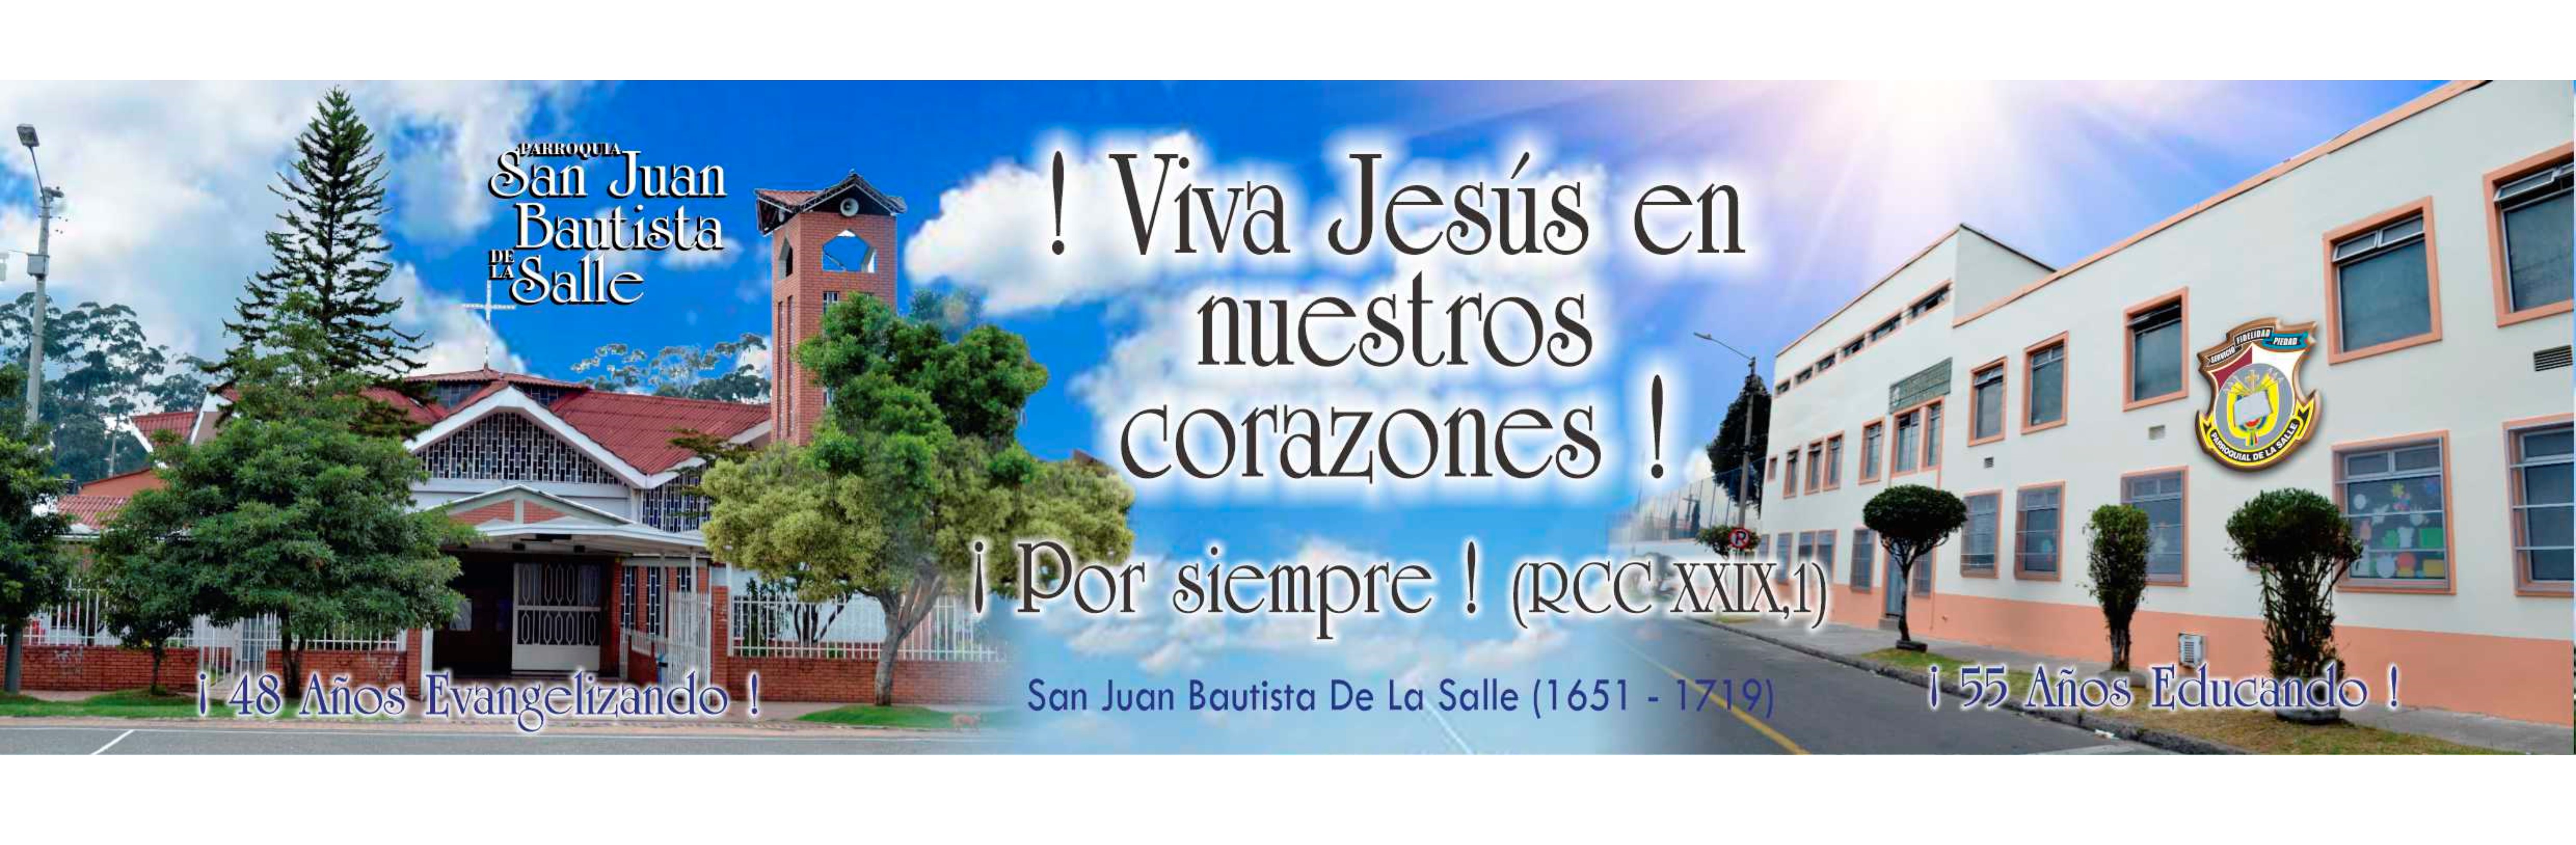 https://arquimedia.s3.amazonaws.com/104/memoria-parroquial-2019/tricentenario-la-salle2jpg.jpg